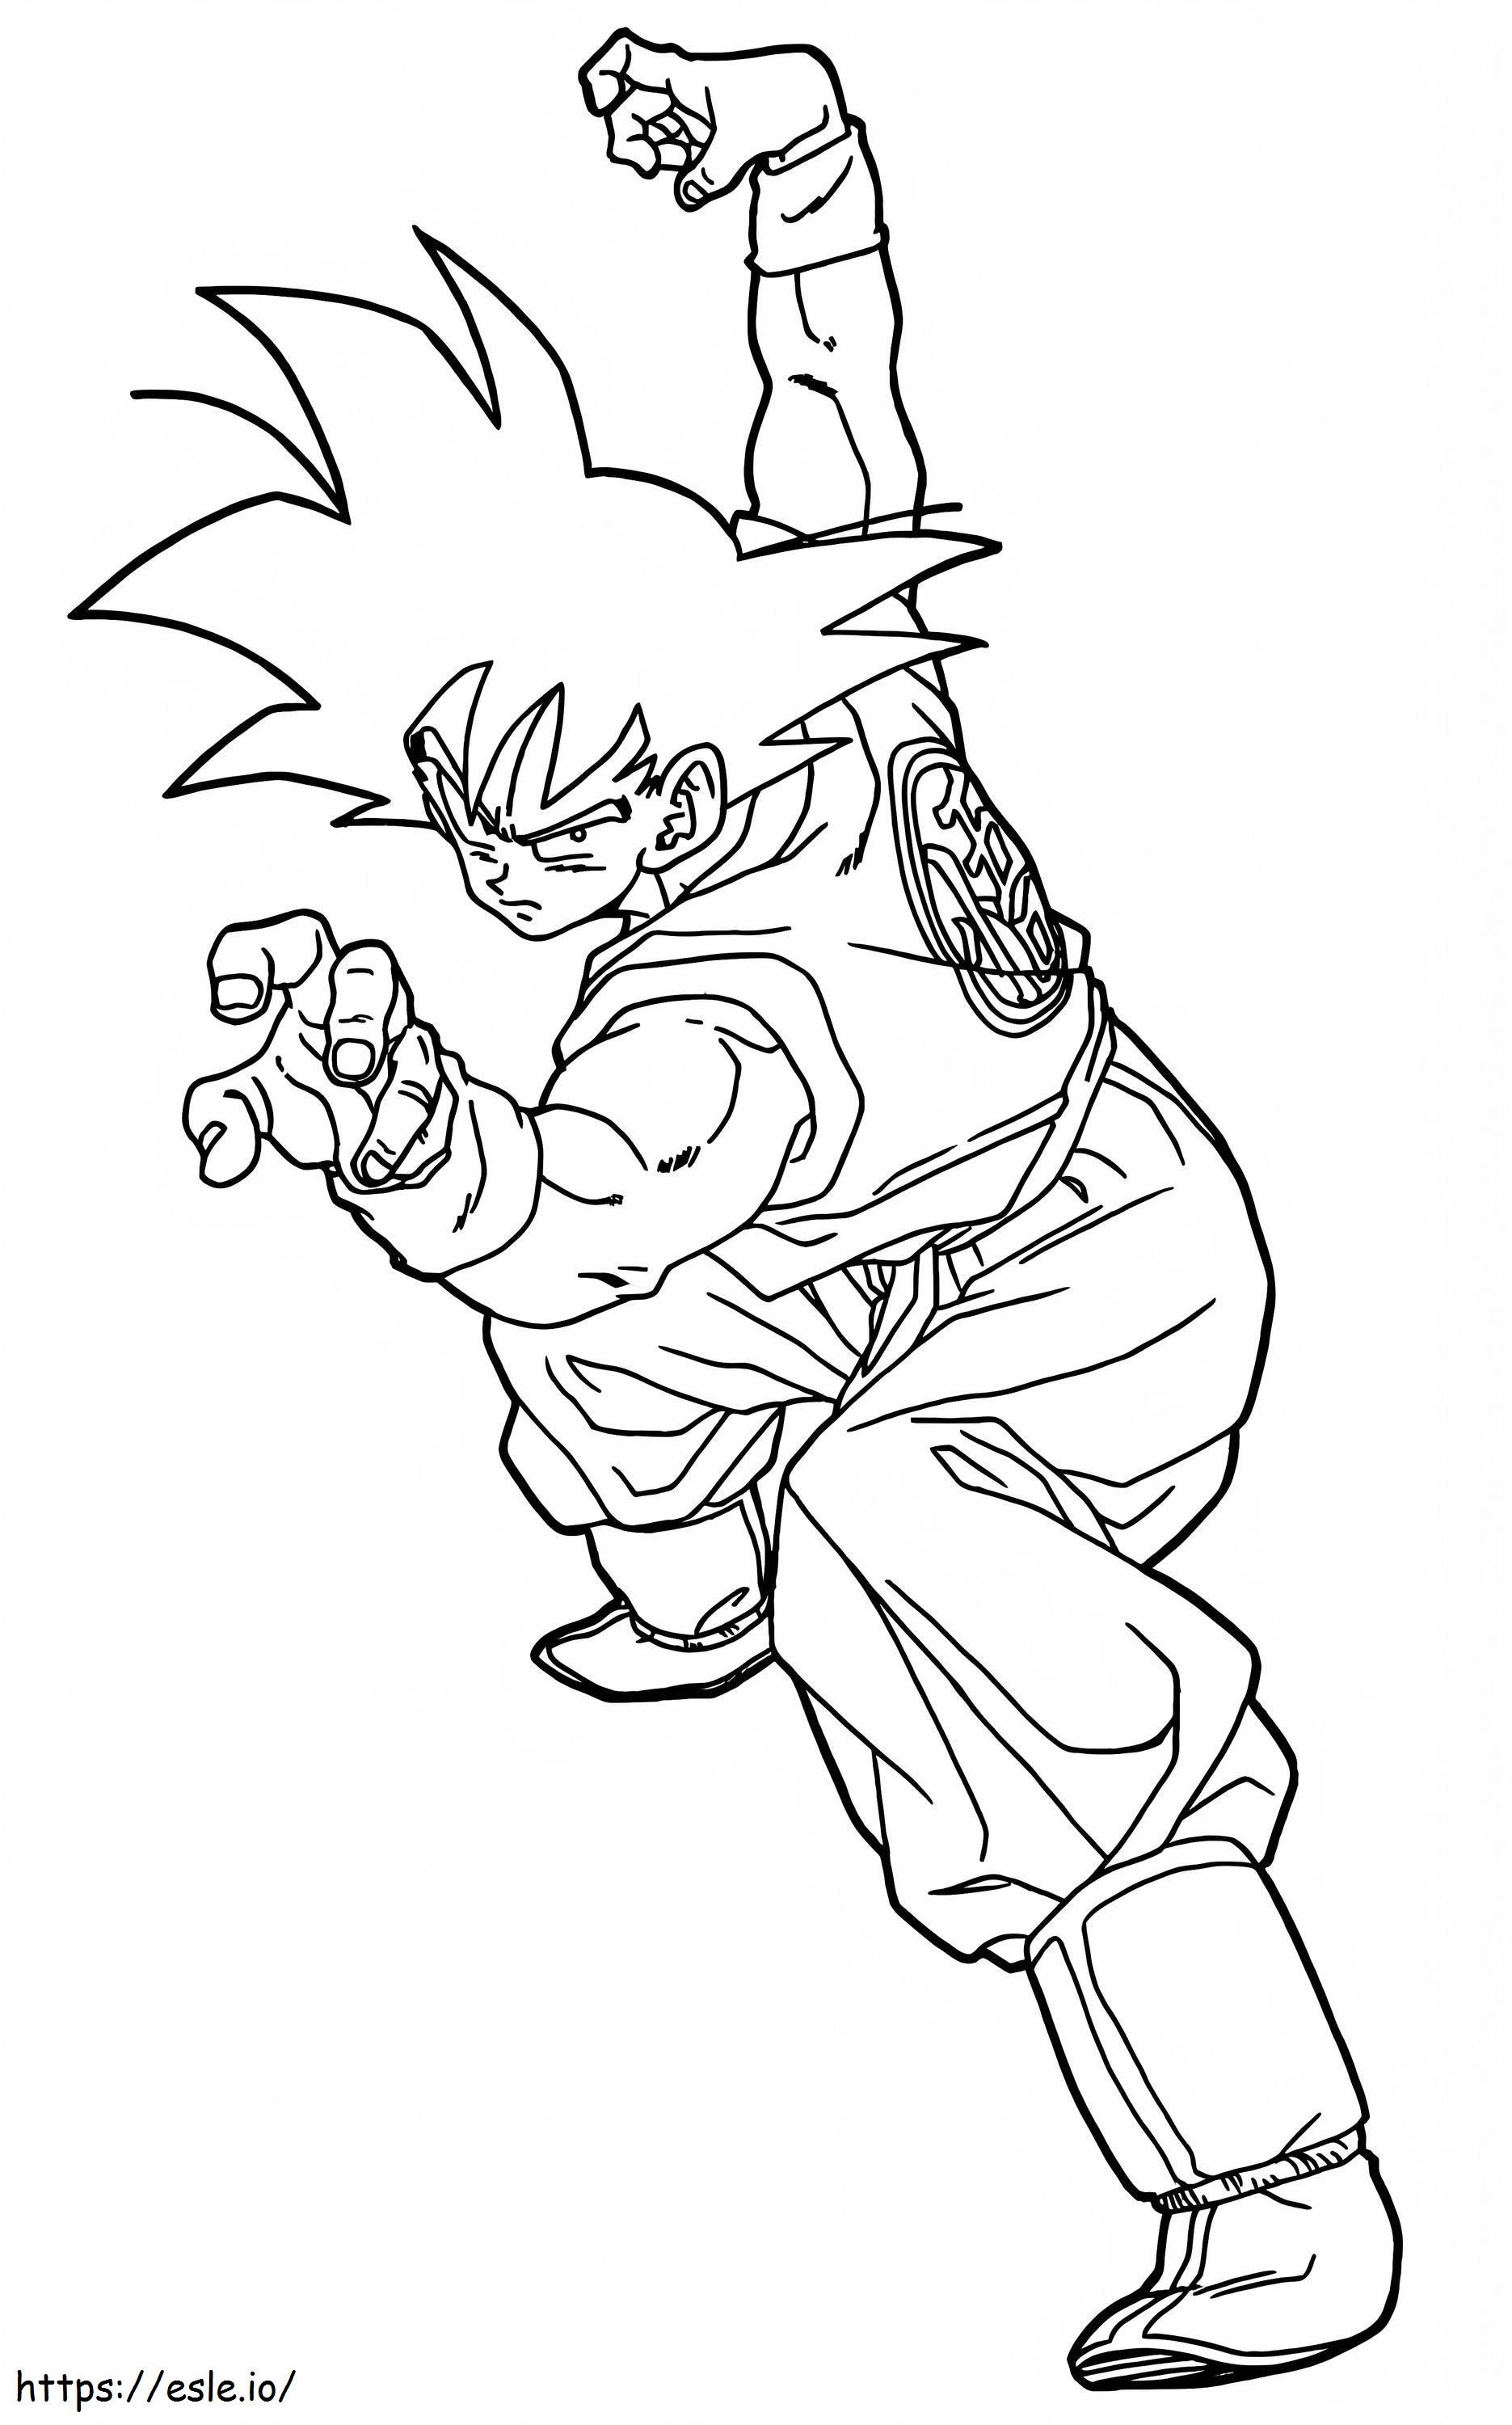 Pozycja bojowa Son Goku kolorowanka